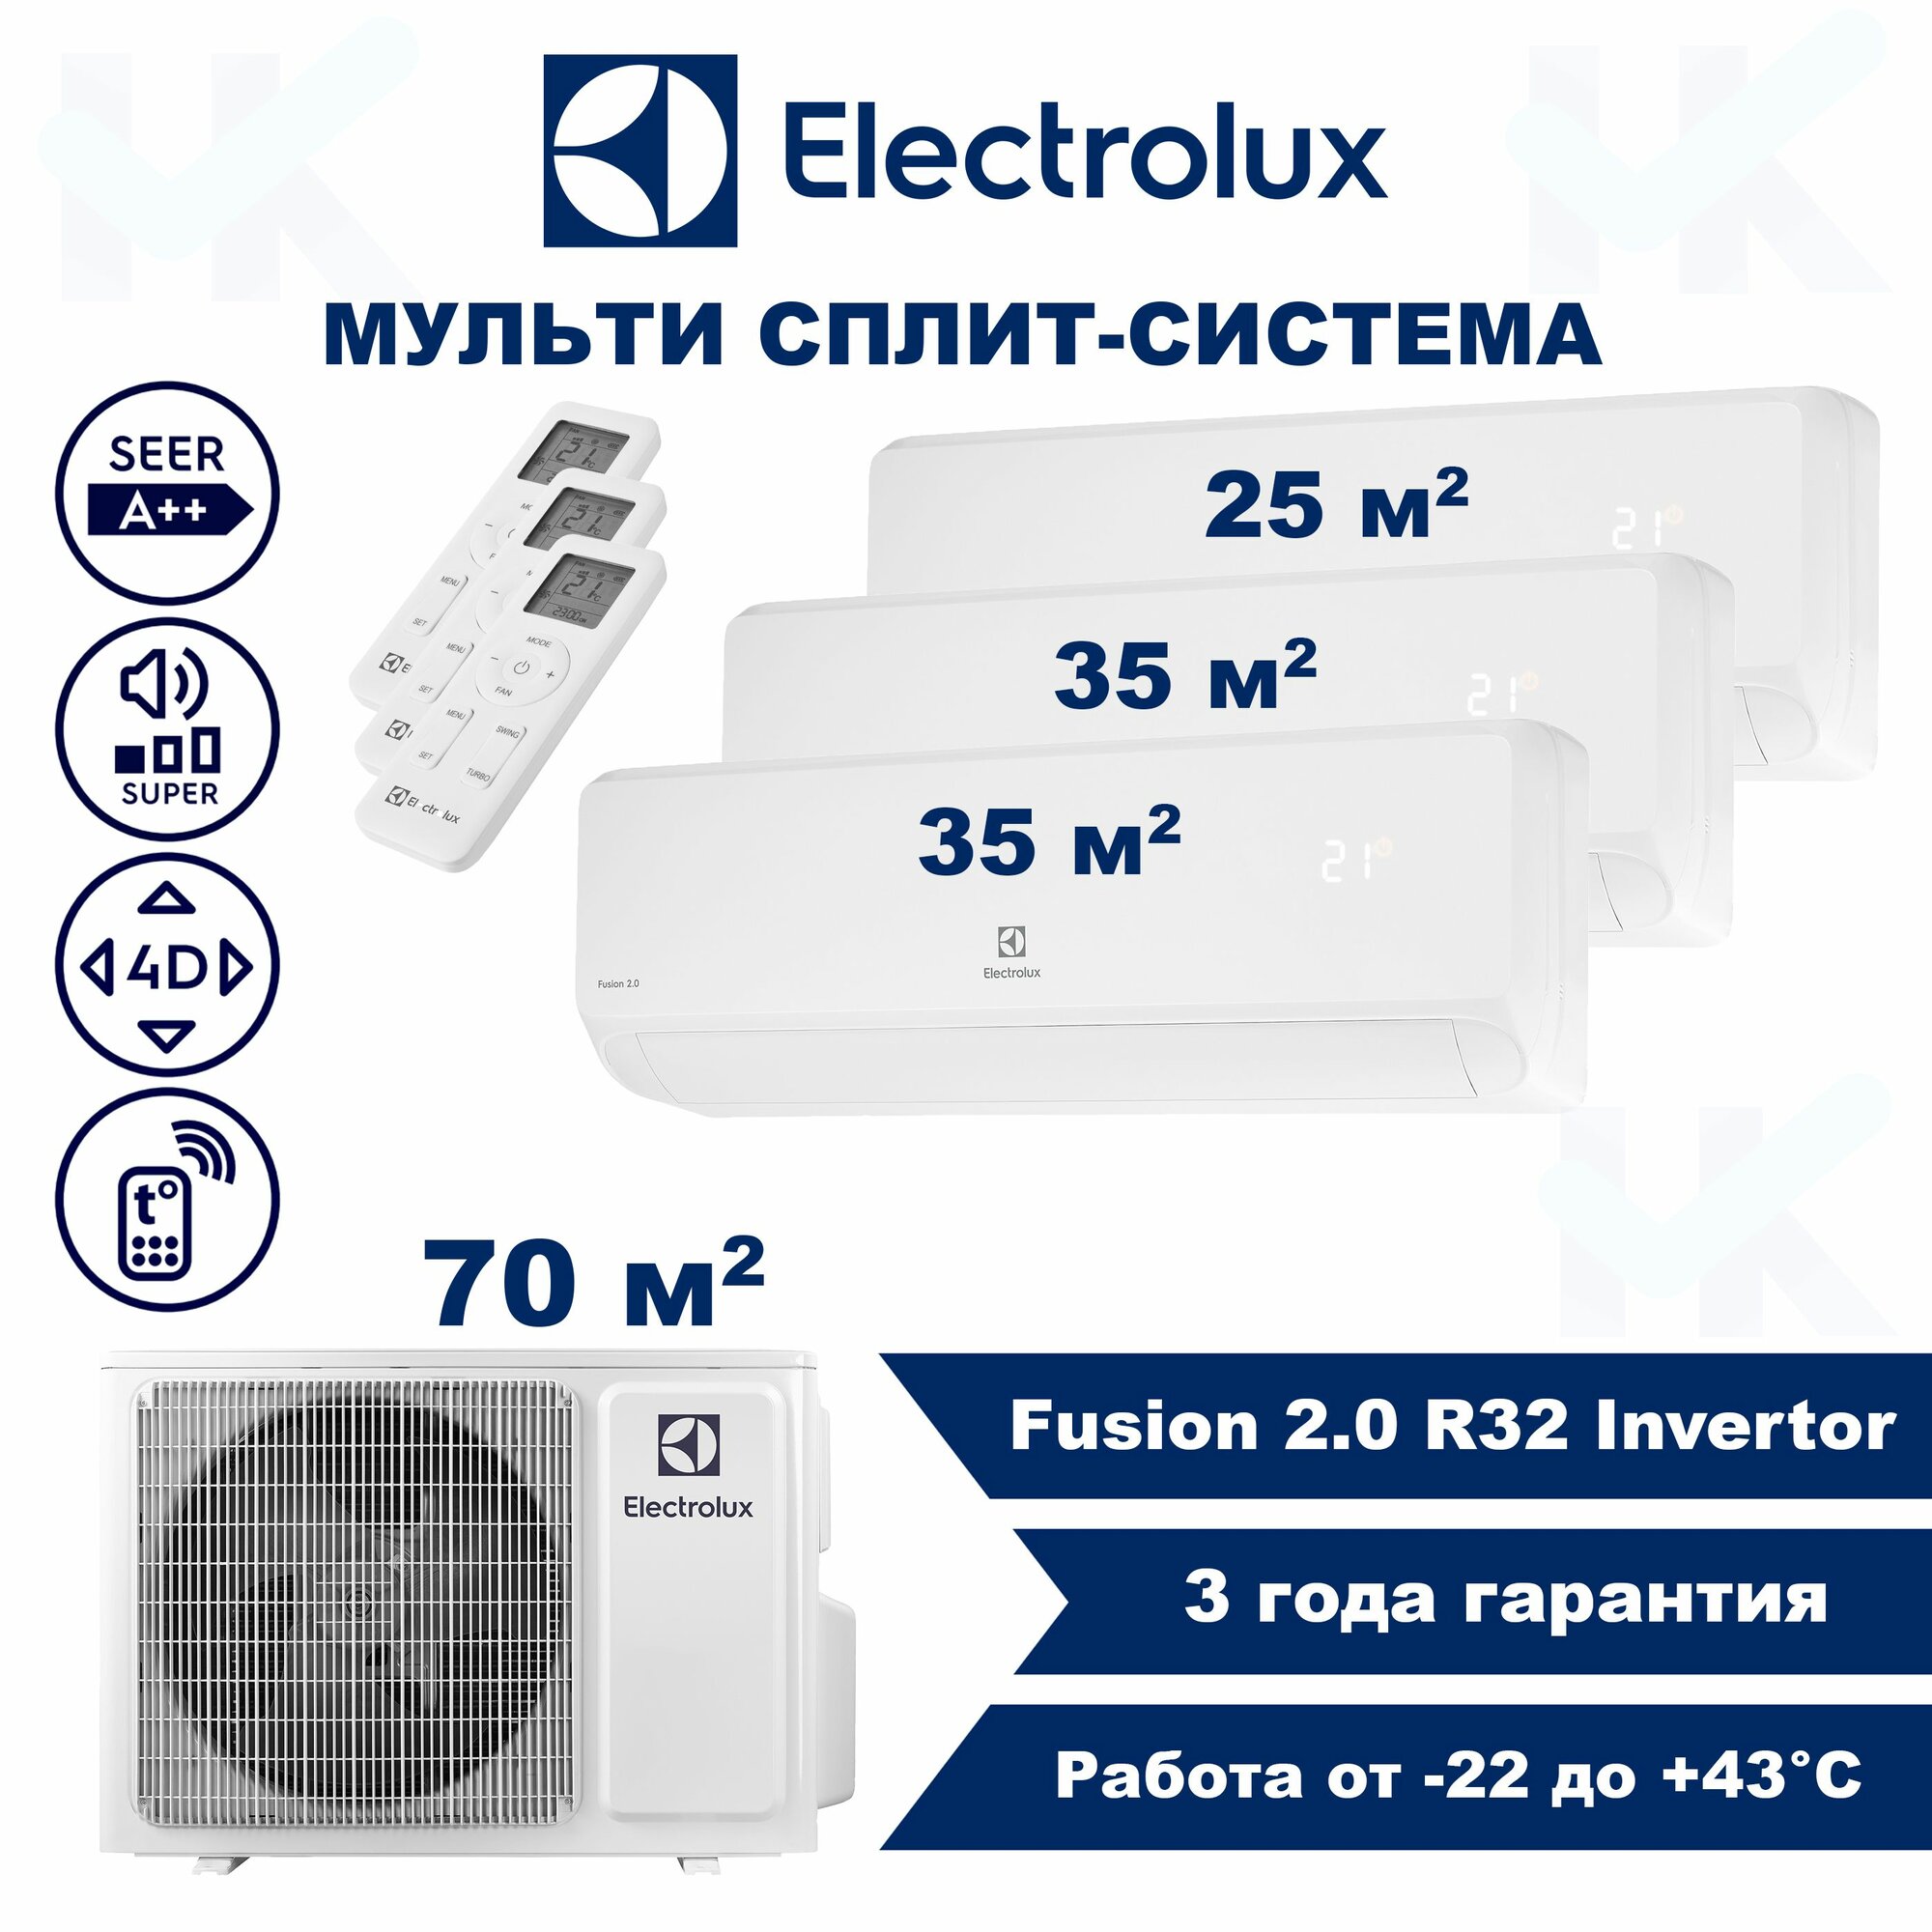 Инверторная мульти сплит-система ELECTROLUX серии Fusion 2.0 на 3 комнаты (25 м2 + 35 м2 + 35 м2) с наружным блоком 70 м2, Попеременная работа